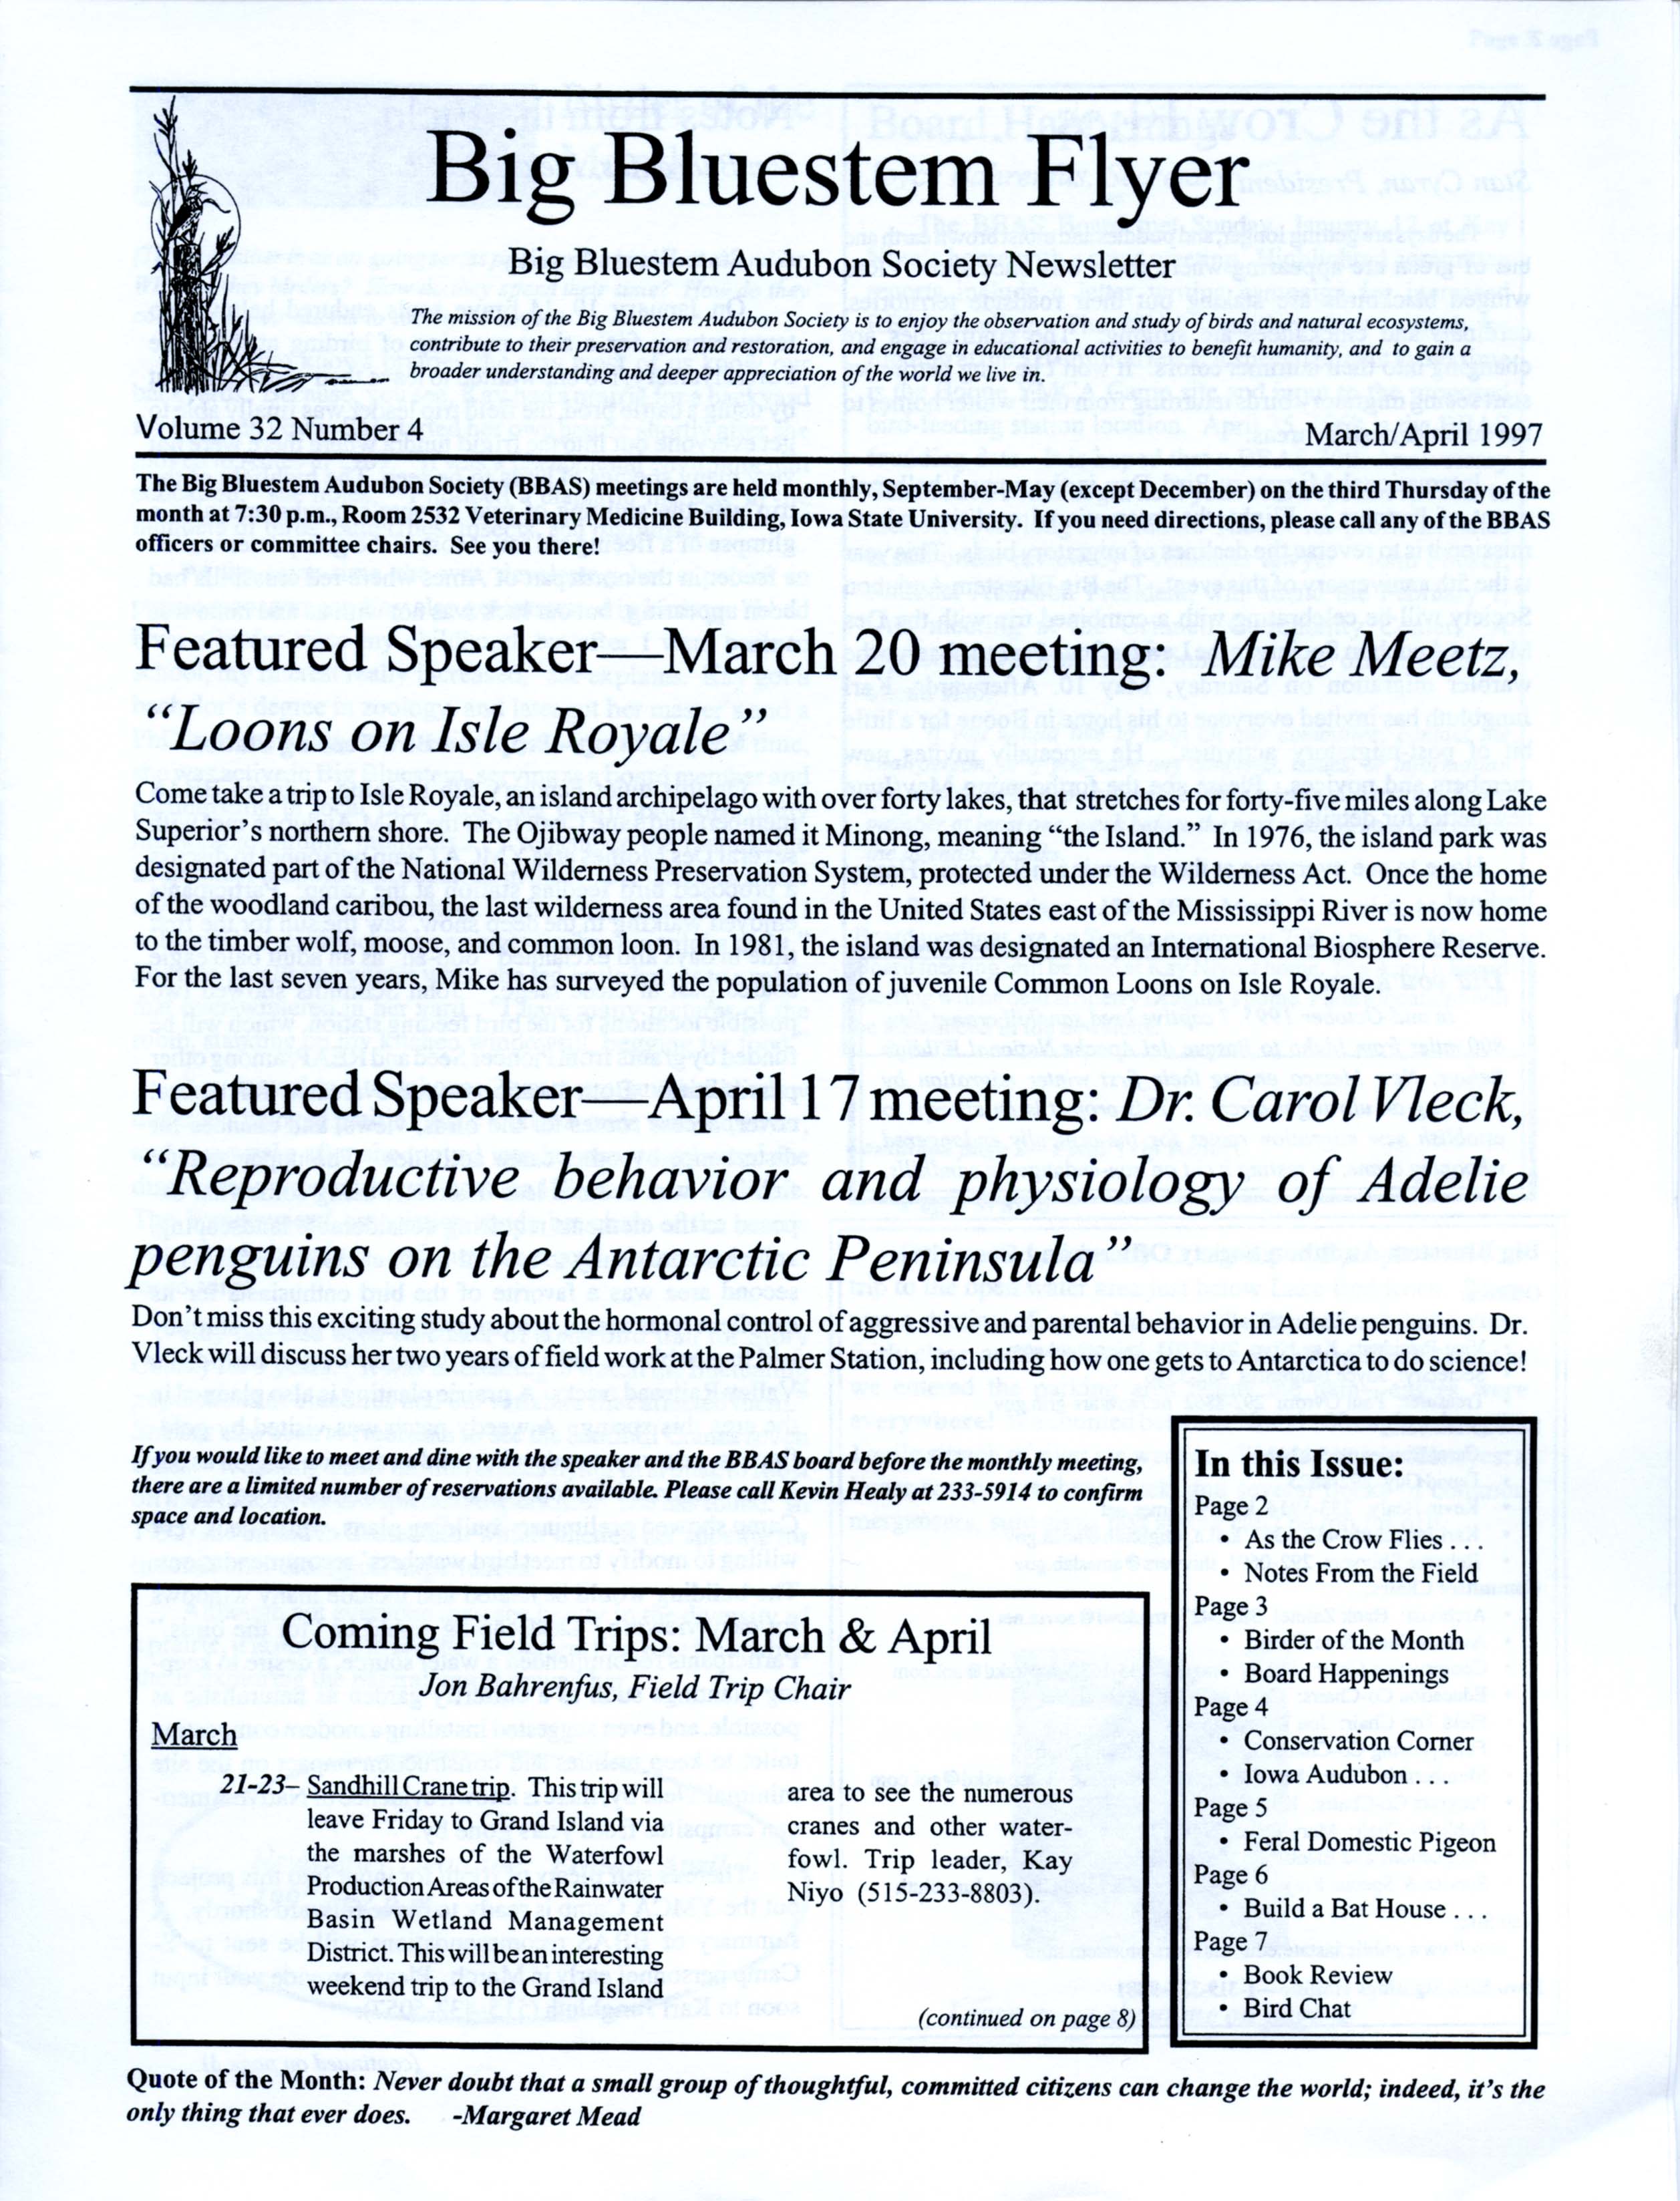 Big Bluestem Flyer, Volume 32, Number 4, March/April 1997